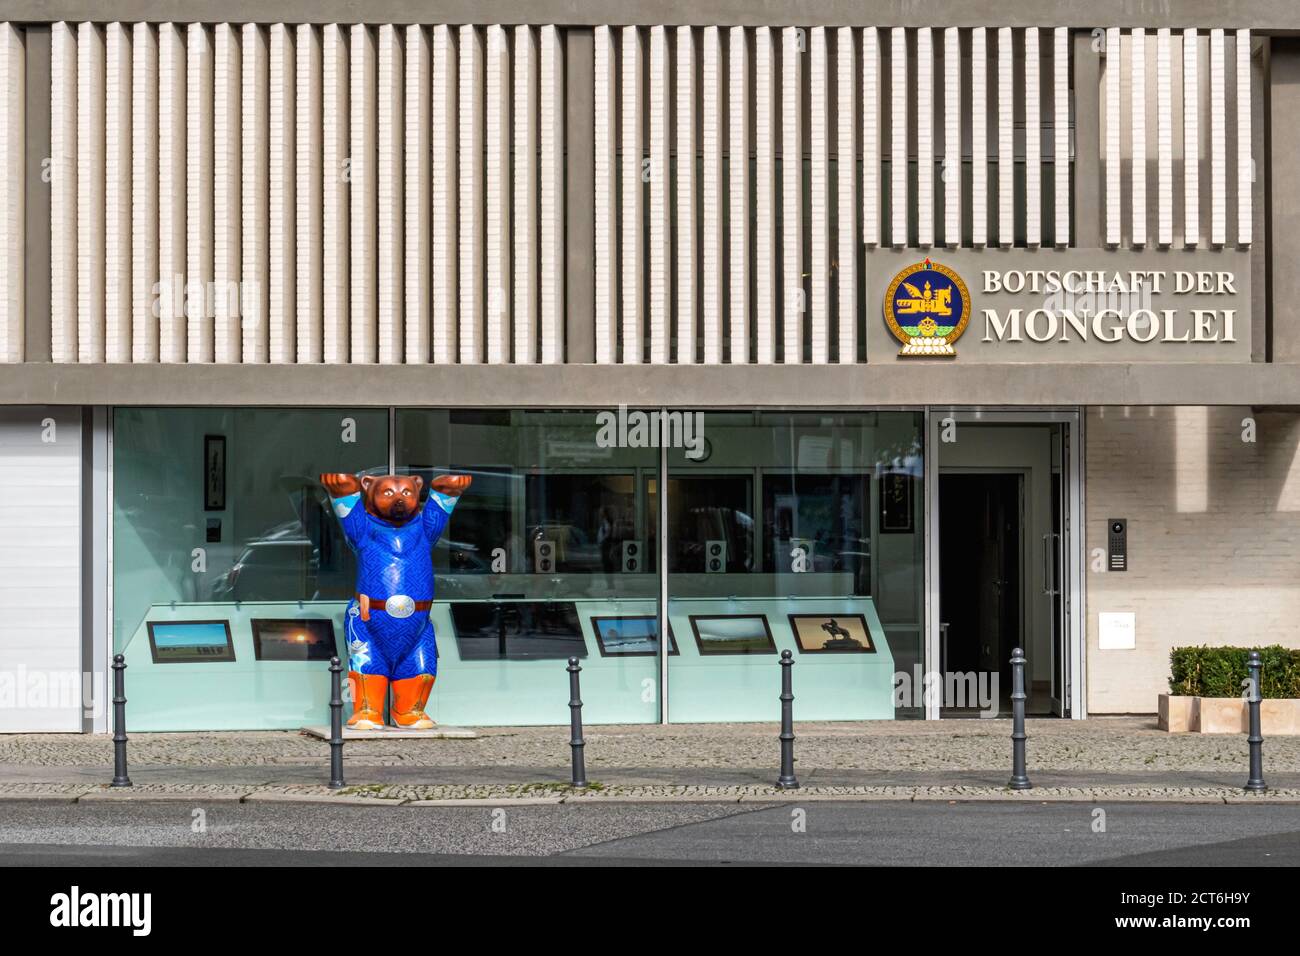 Embassy of Mongolia (Botschaft der Mongolei) and Blue Buddy bear at Hausvogteiplatz 14 ,Mitte,Berlin. Iconic bear emblem Stock Photo